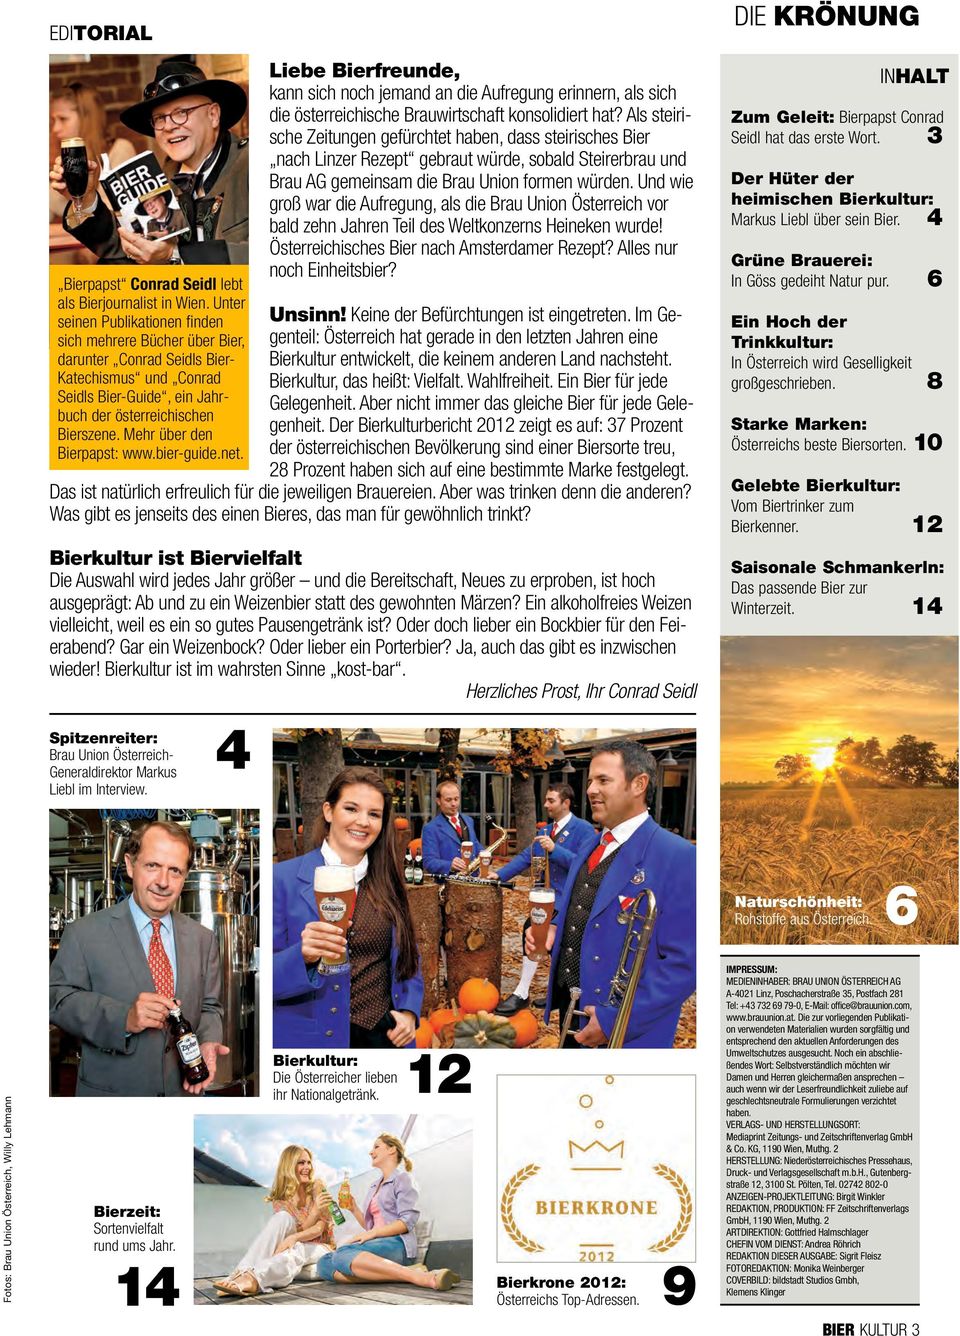 Mehr über den Bierpapst: www.bier-guide.net. Spitzenreiter: Brau Union Österreich- Generaldirektor Markus Liebl im Interview.